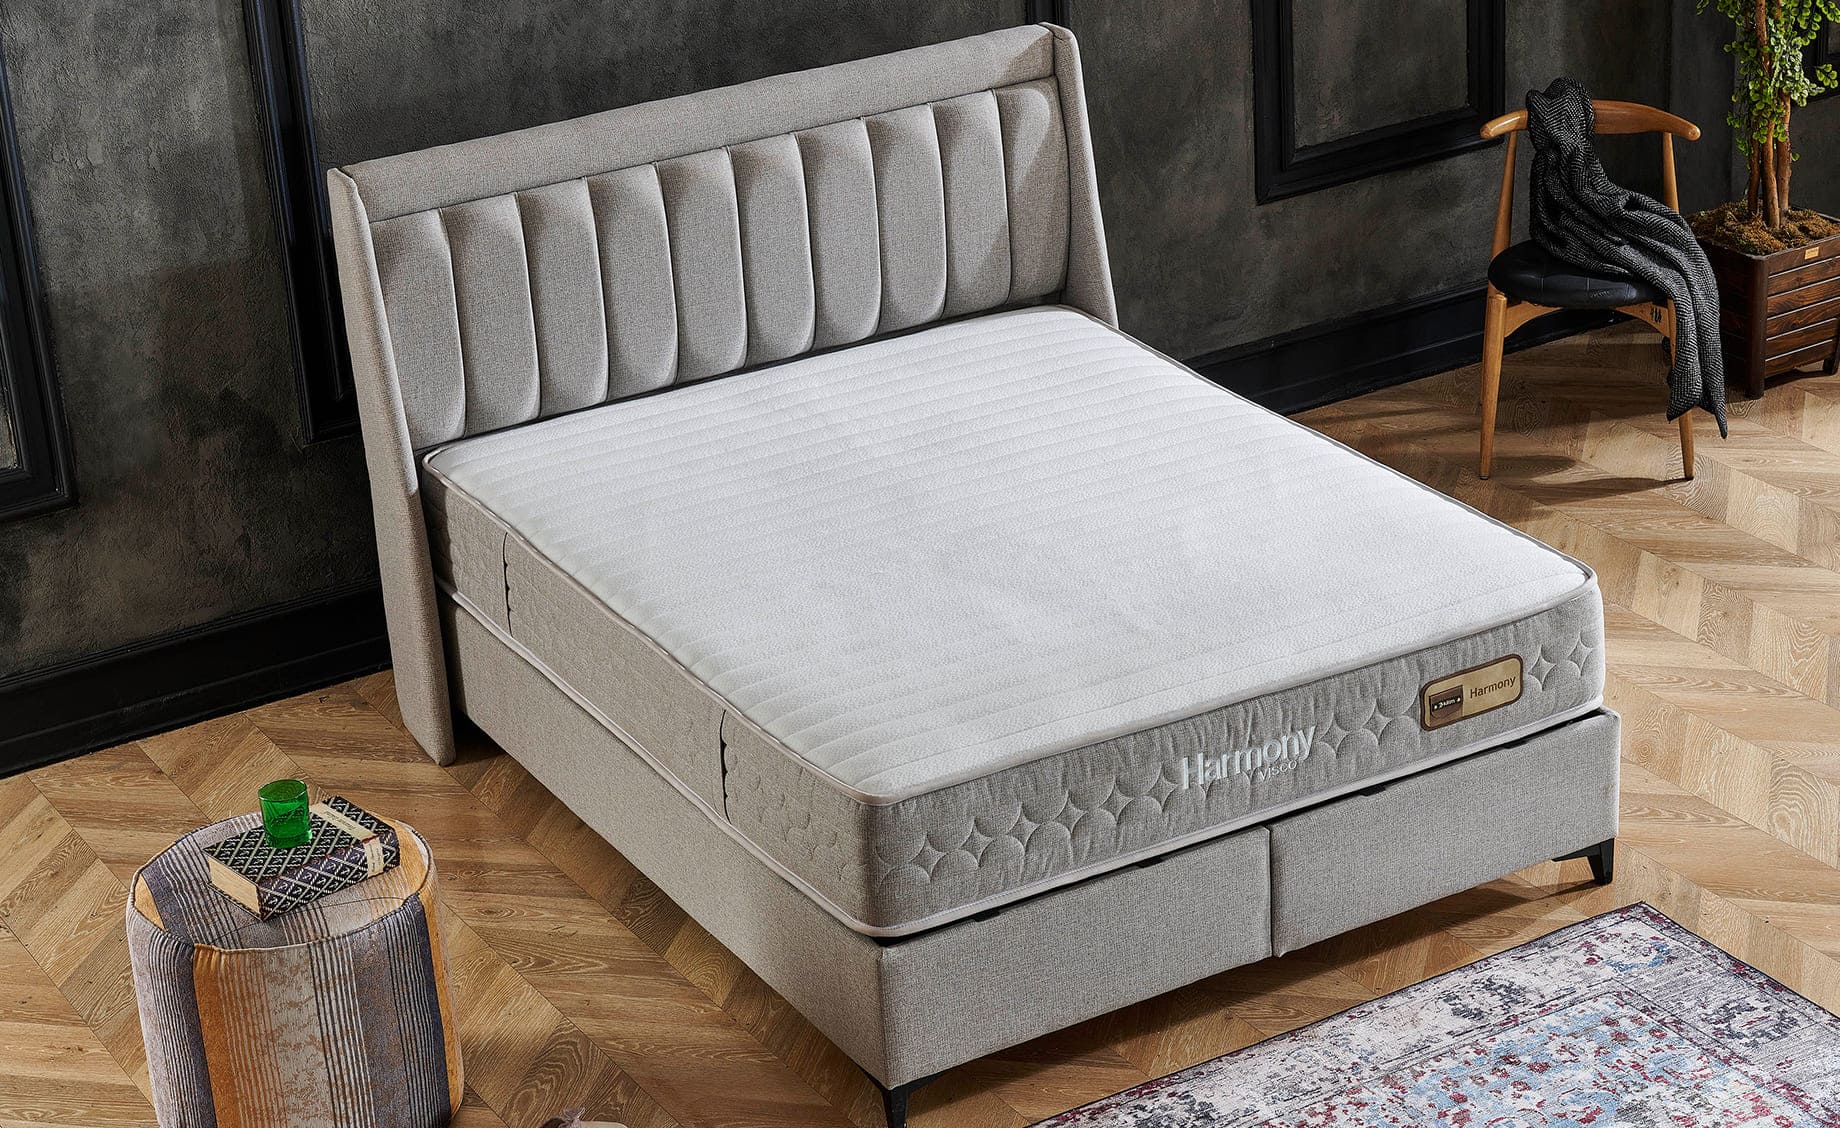 Harmony boxspring krevet sa prostorom za odlaganje 175x207x126/66cm